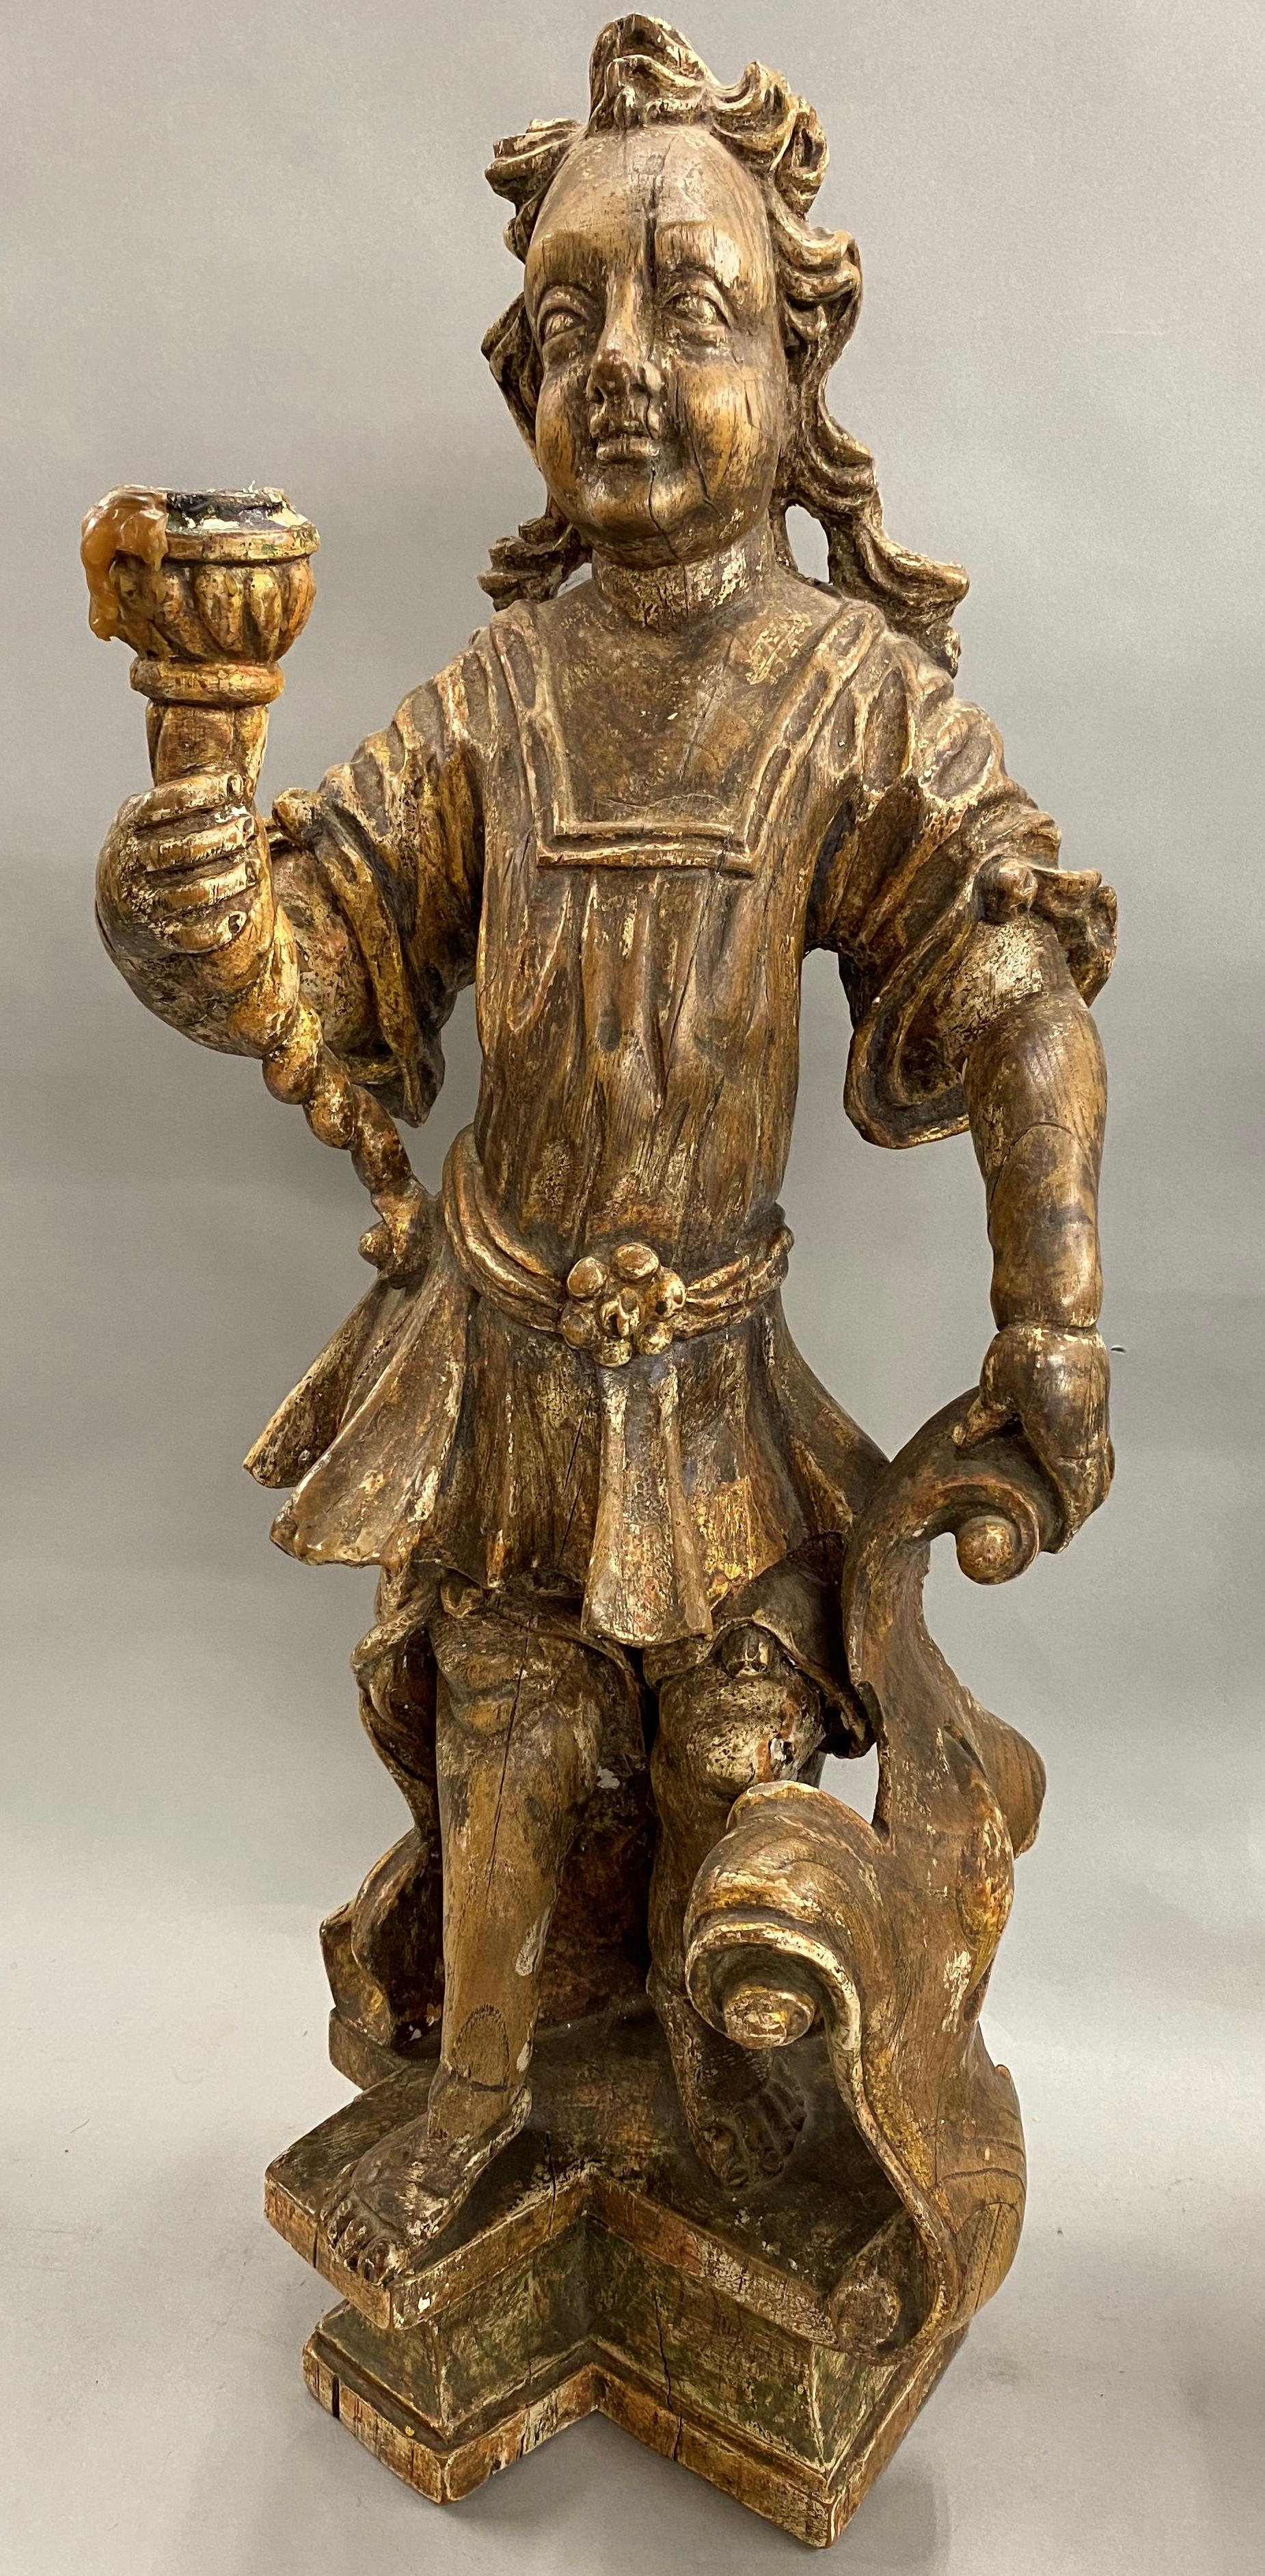 Ein fein geschnitztes, polychromes Paar figuraler Kerzenhalter aus Holz mit vergoldeten Highlights, kontinentalen Ursprungs, aus dem 18. Jahrhundert. Sehr guter Gesamtzustand mit einigen Schrumpfungsrissen, Farb- und Vergoldungsverlusten und